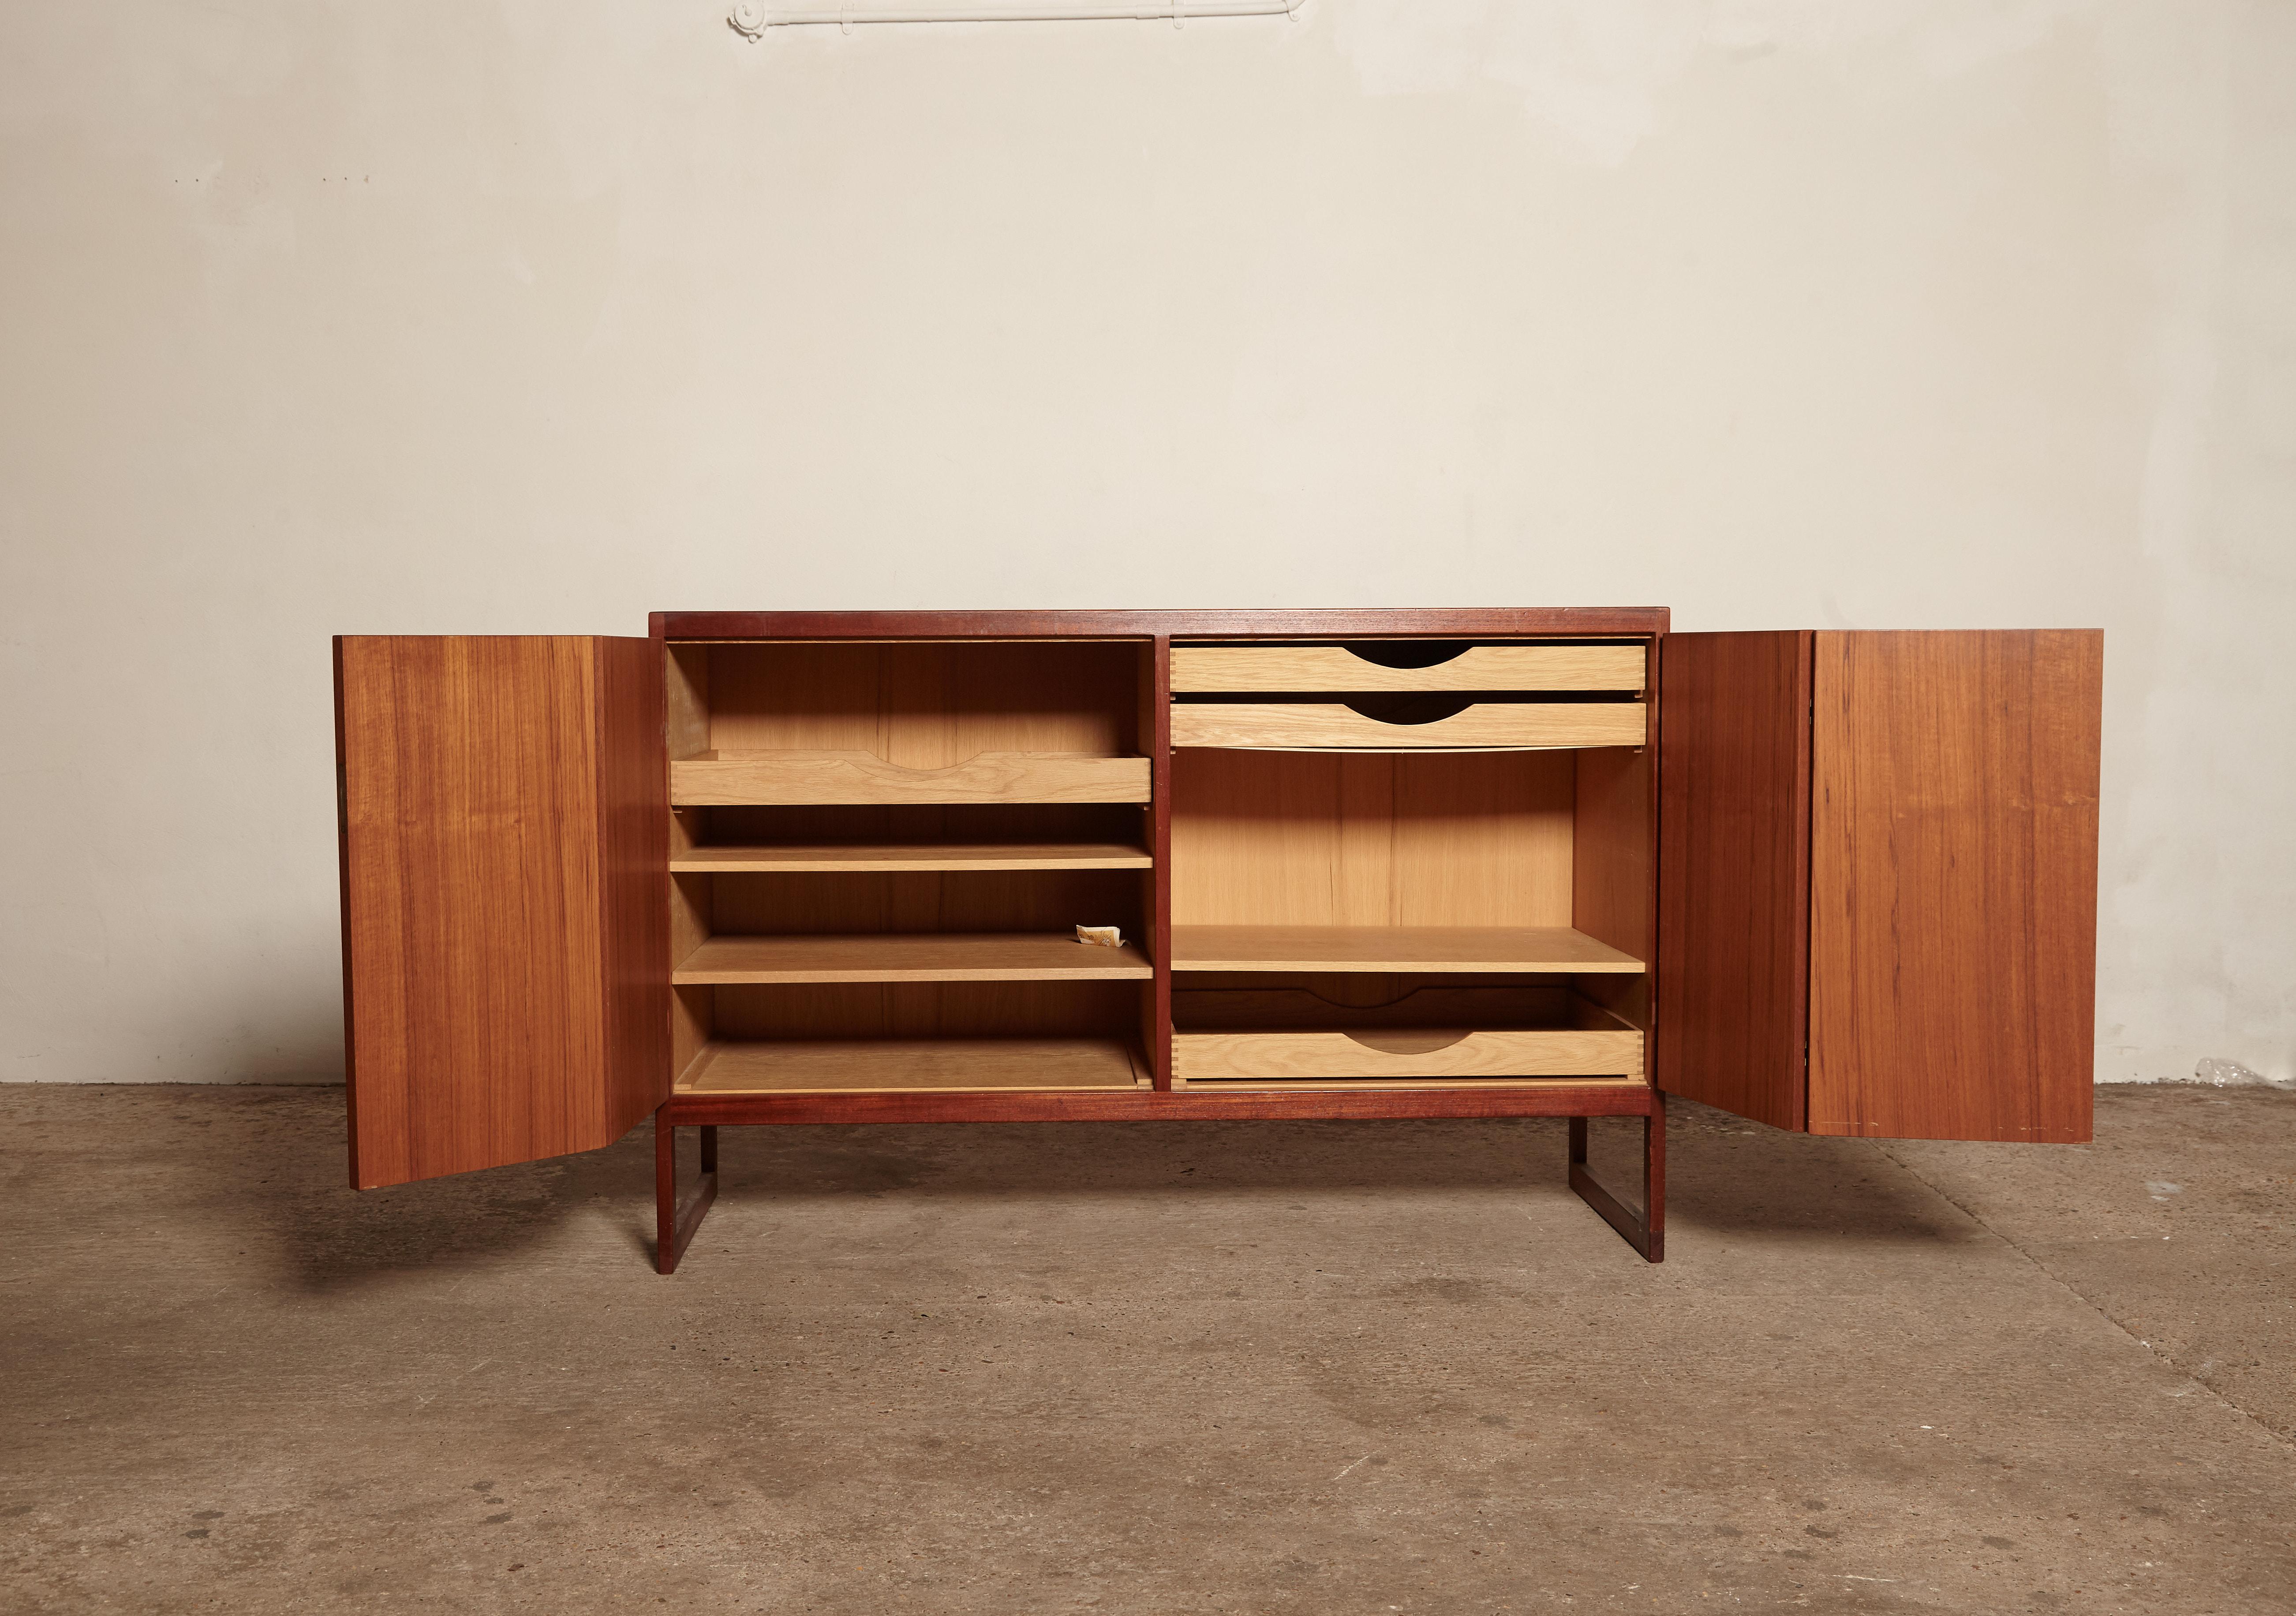 Børge Mogensen BM57 Cabinet / Sideboard, for P. Lauritsen & Søn, Denmark, 1957 (20. Jahrhundert)